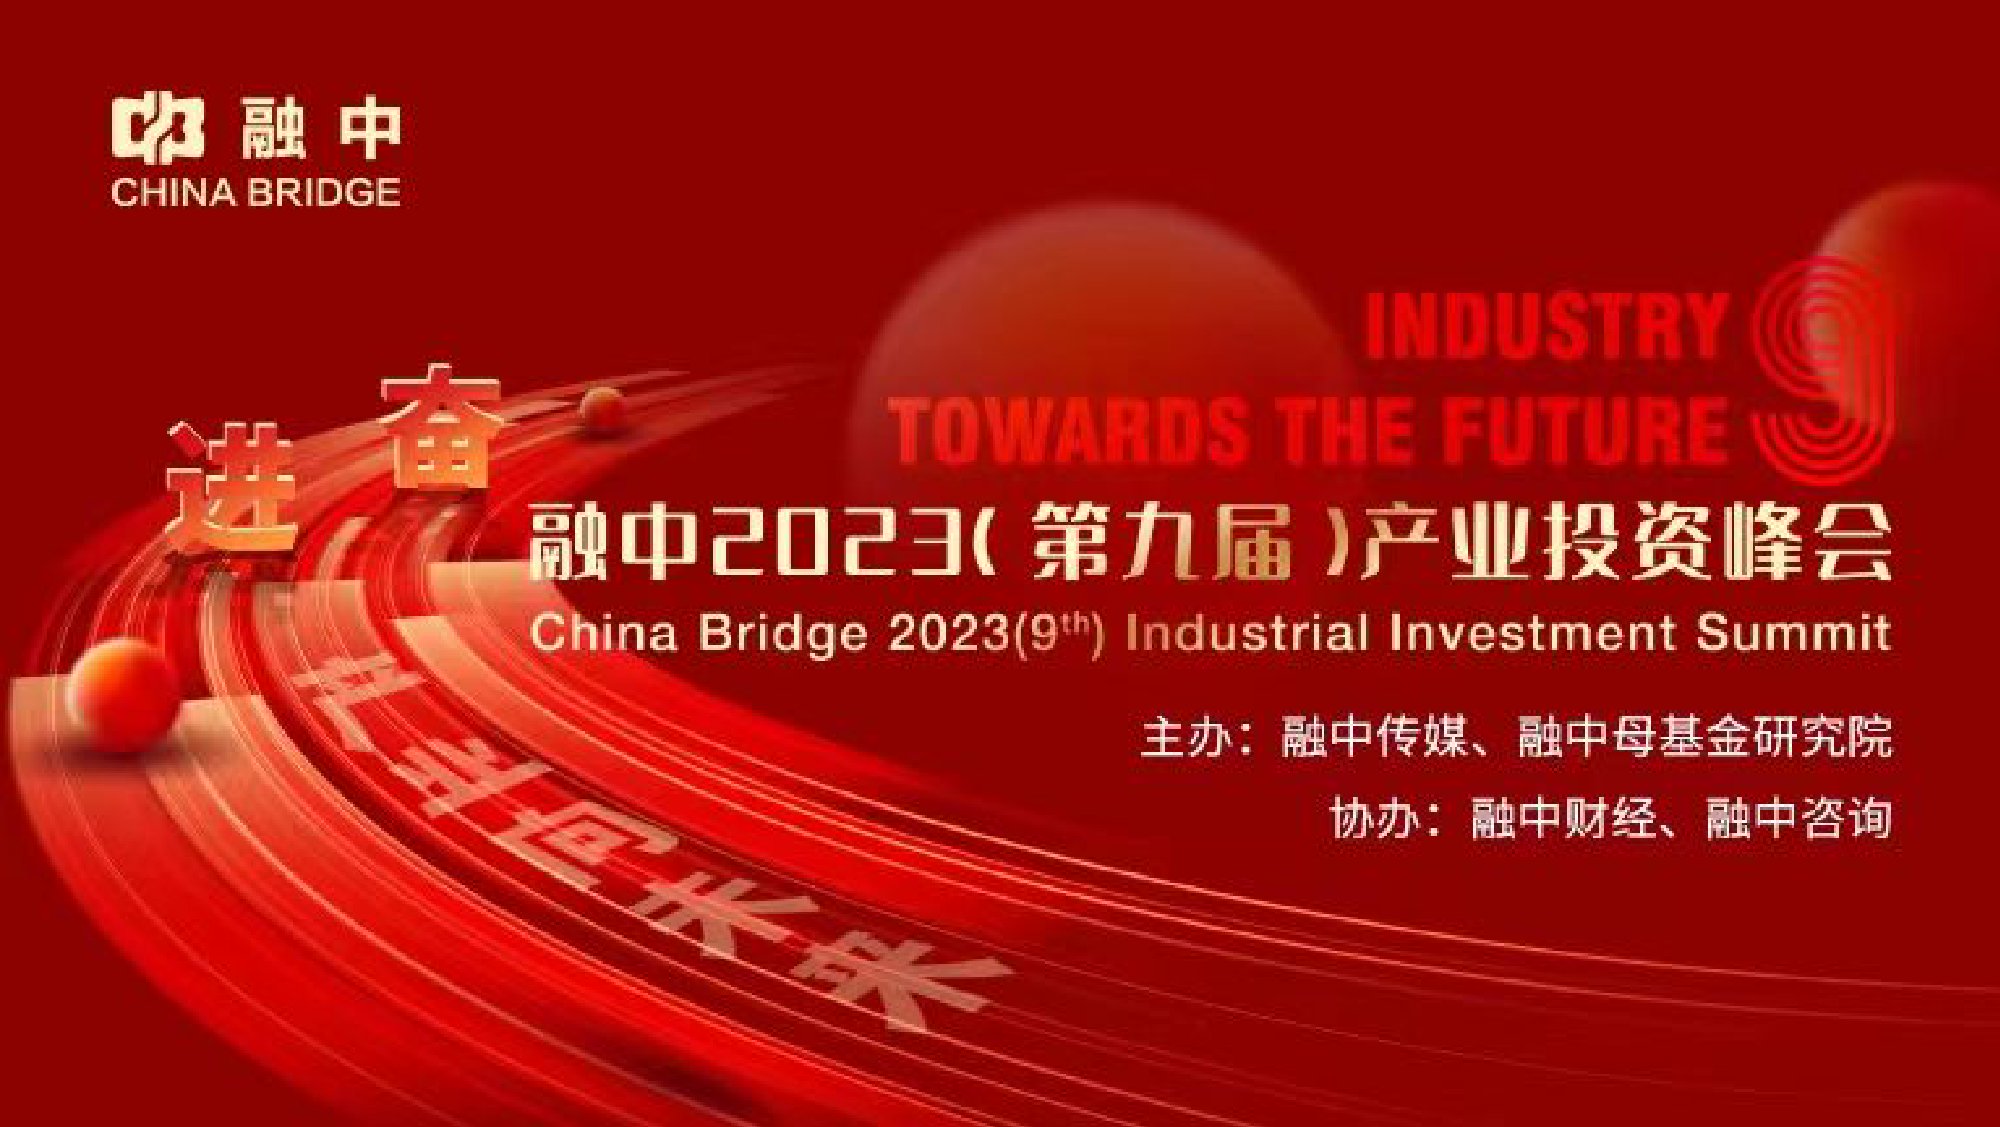 融中2023产业投资峰会：秦锋、杨毅强、王阳等演讲